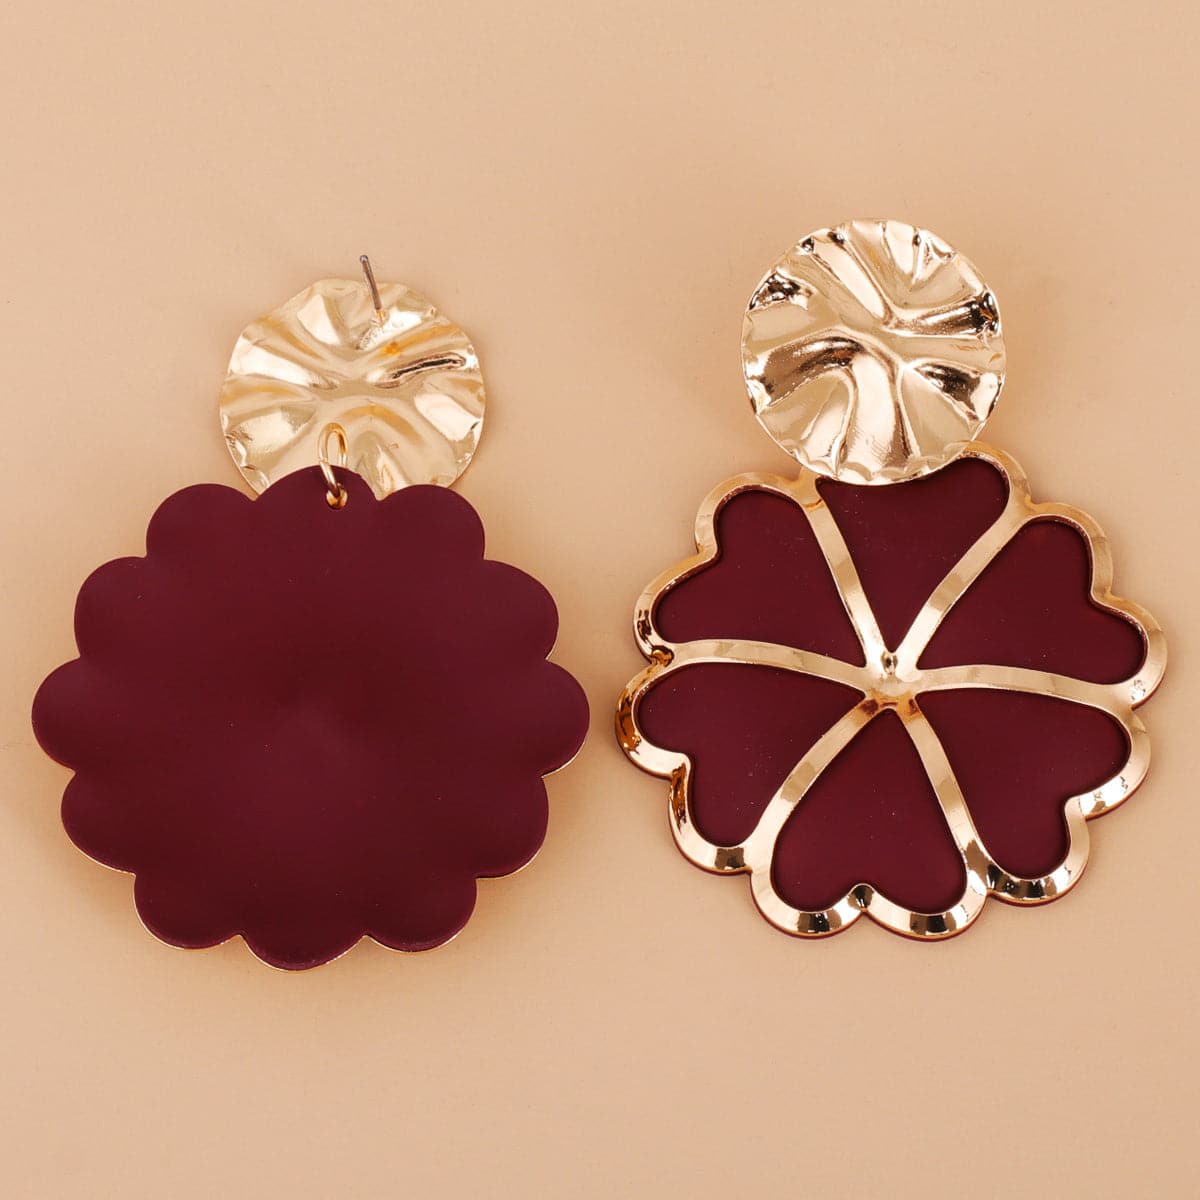 Brown Enamel & 18K Gold-Plated Heart Flower Drop Earrings